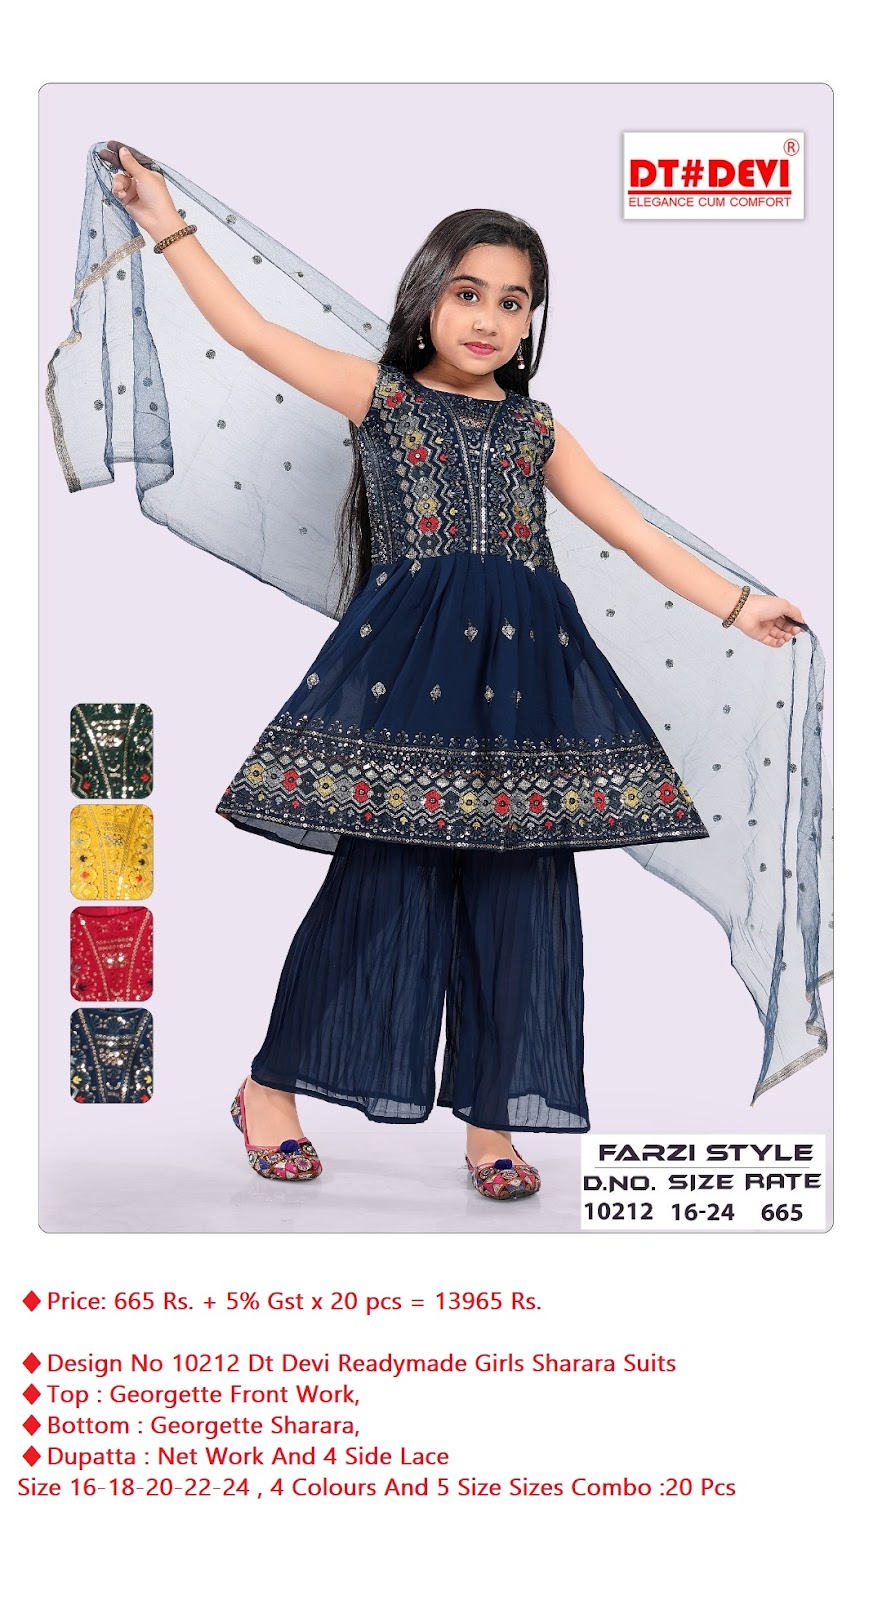 Dt Devi Design No 10212 Readymade Girls Sharara Dress Catalog Lowest Price